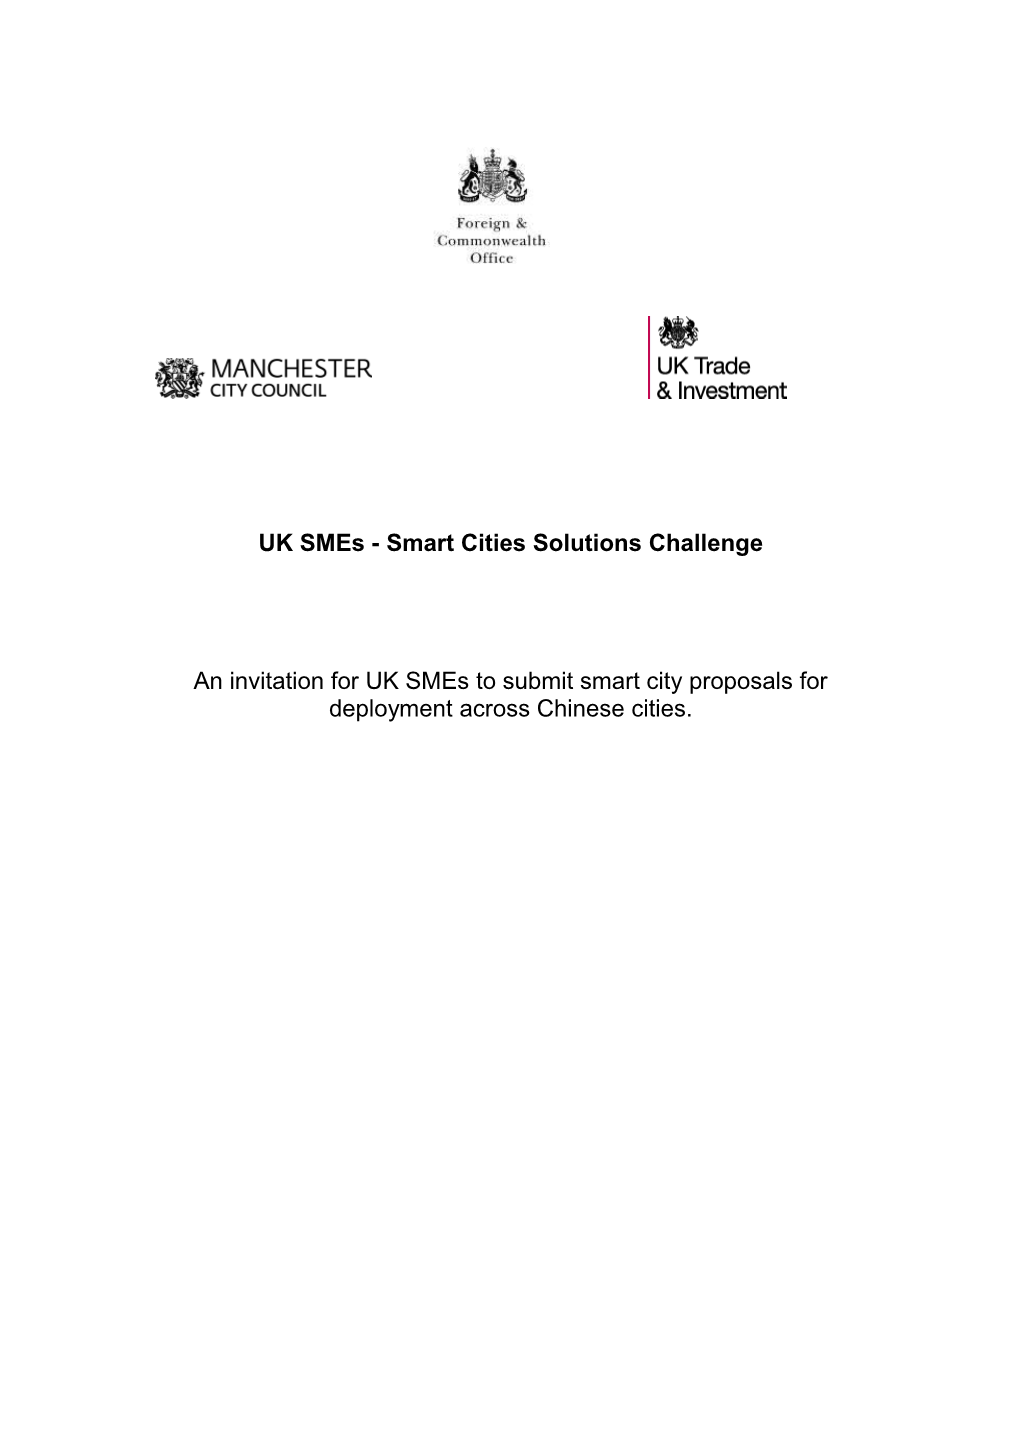 Smart Cities Solution Challenge